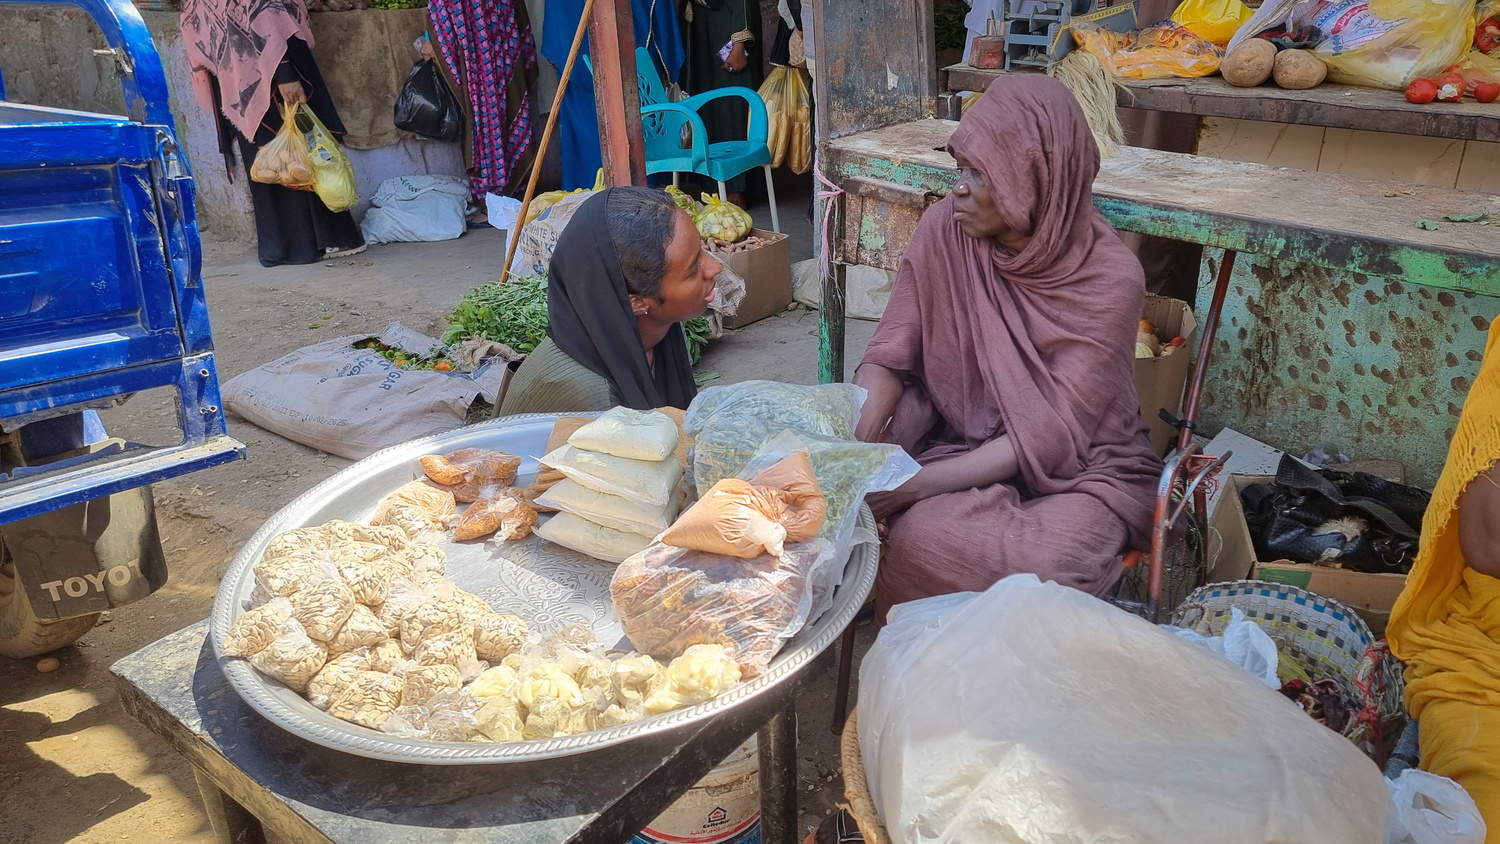 Una mujer se agacha para hablar con otra sentada frente a una bandeja de comida que vende en un mercado.